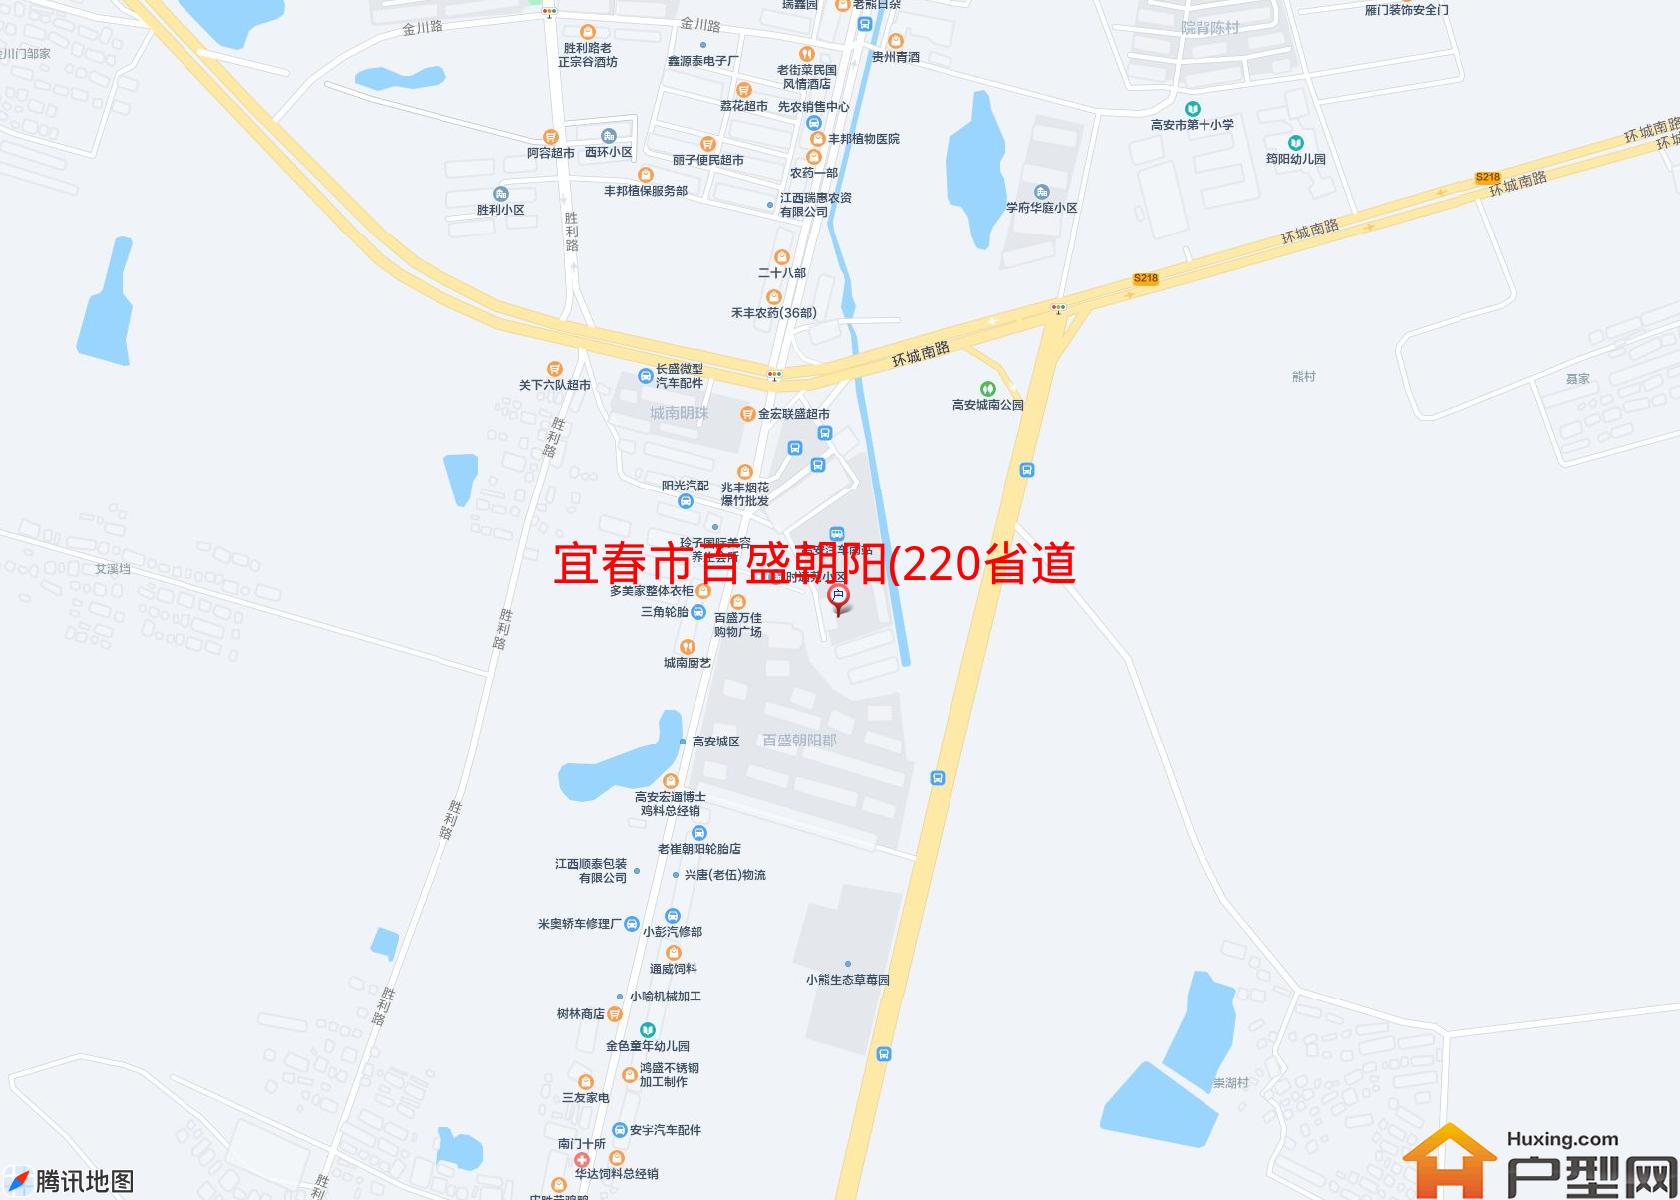 百盛朝阳(220省道)小区 - 户型网